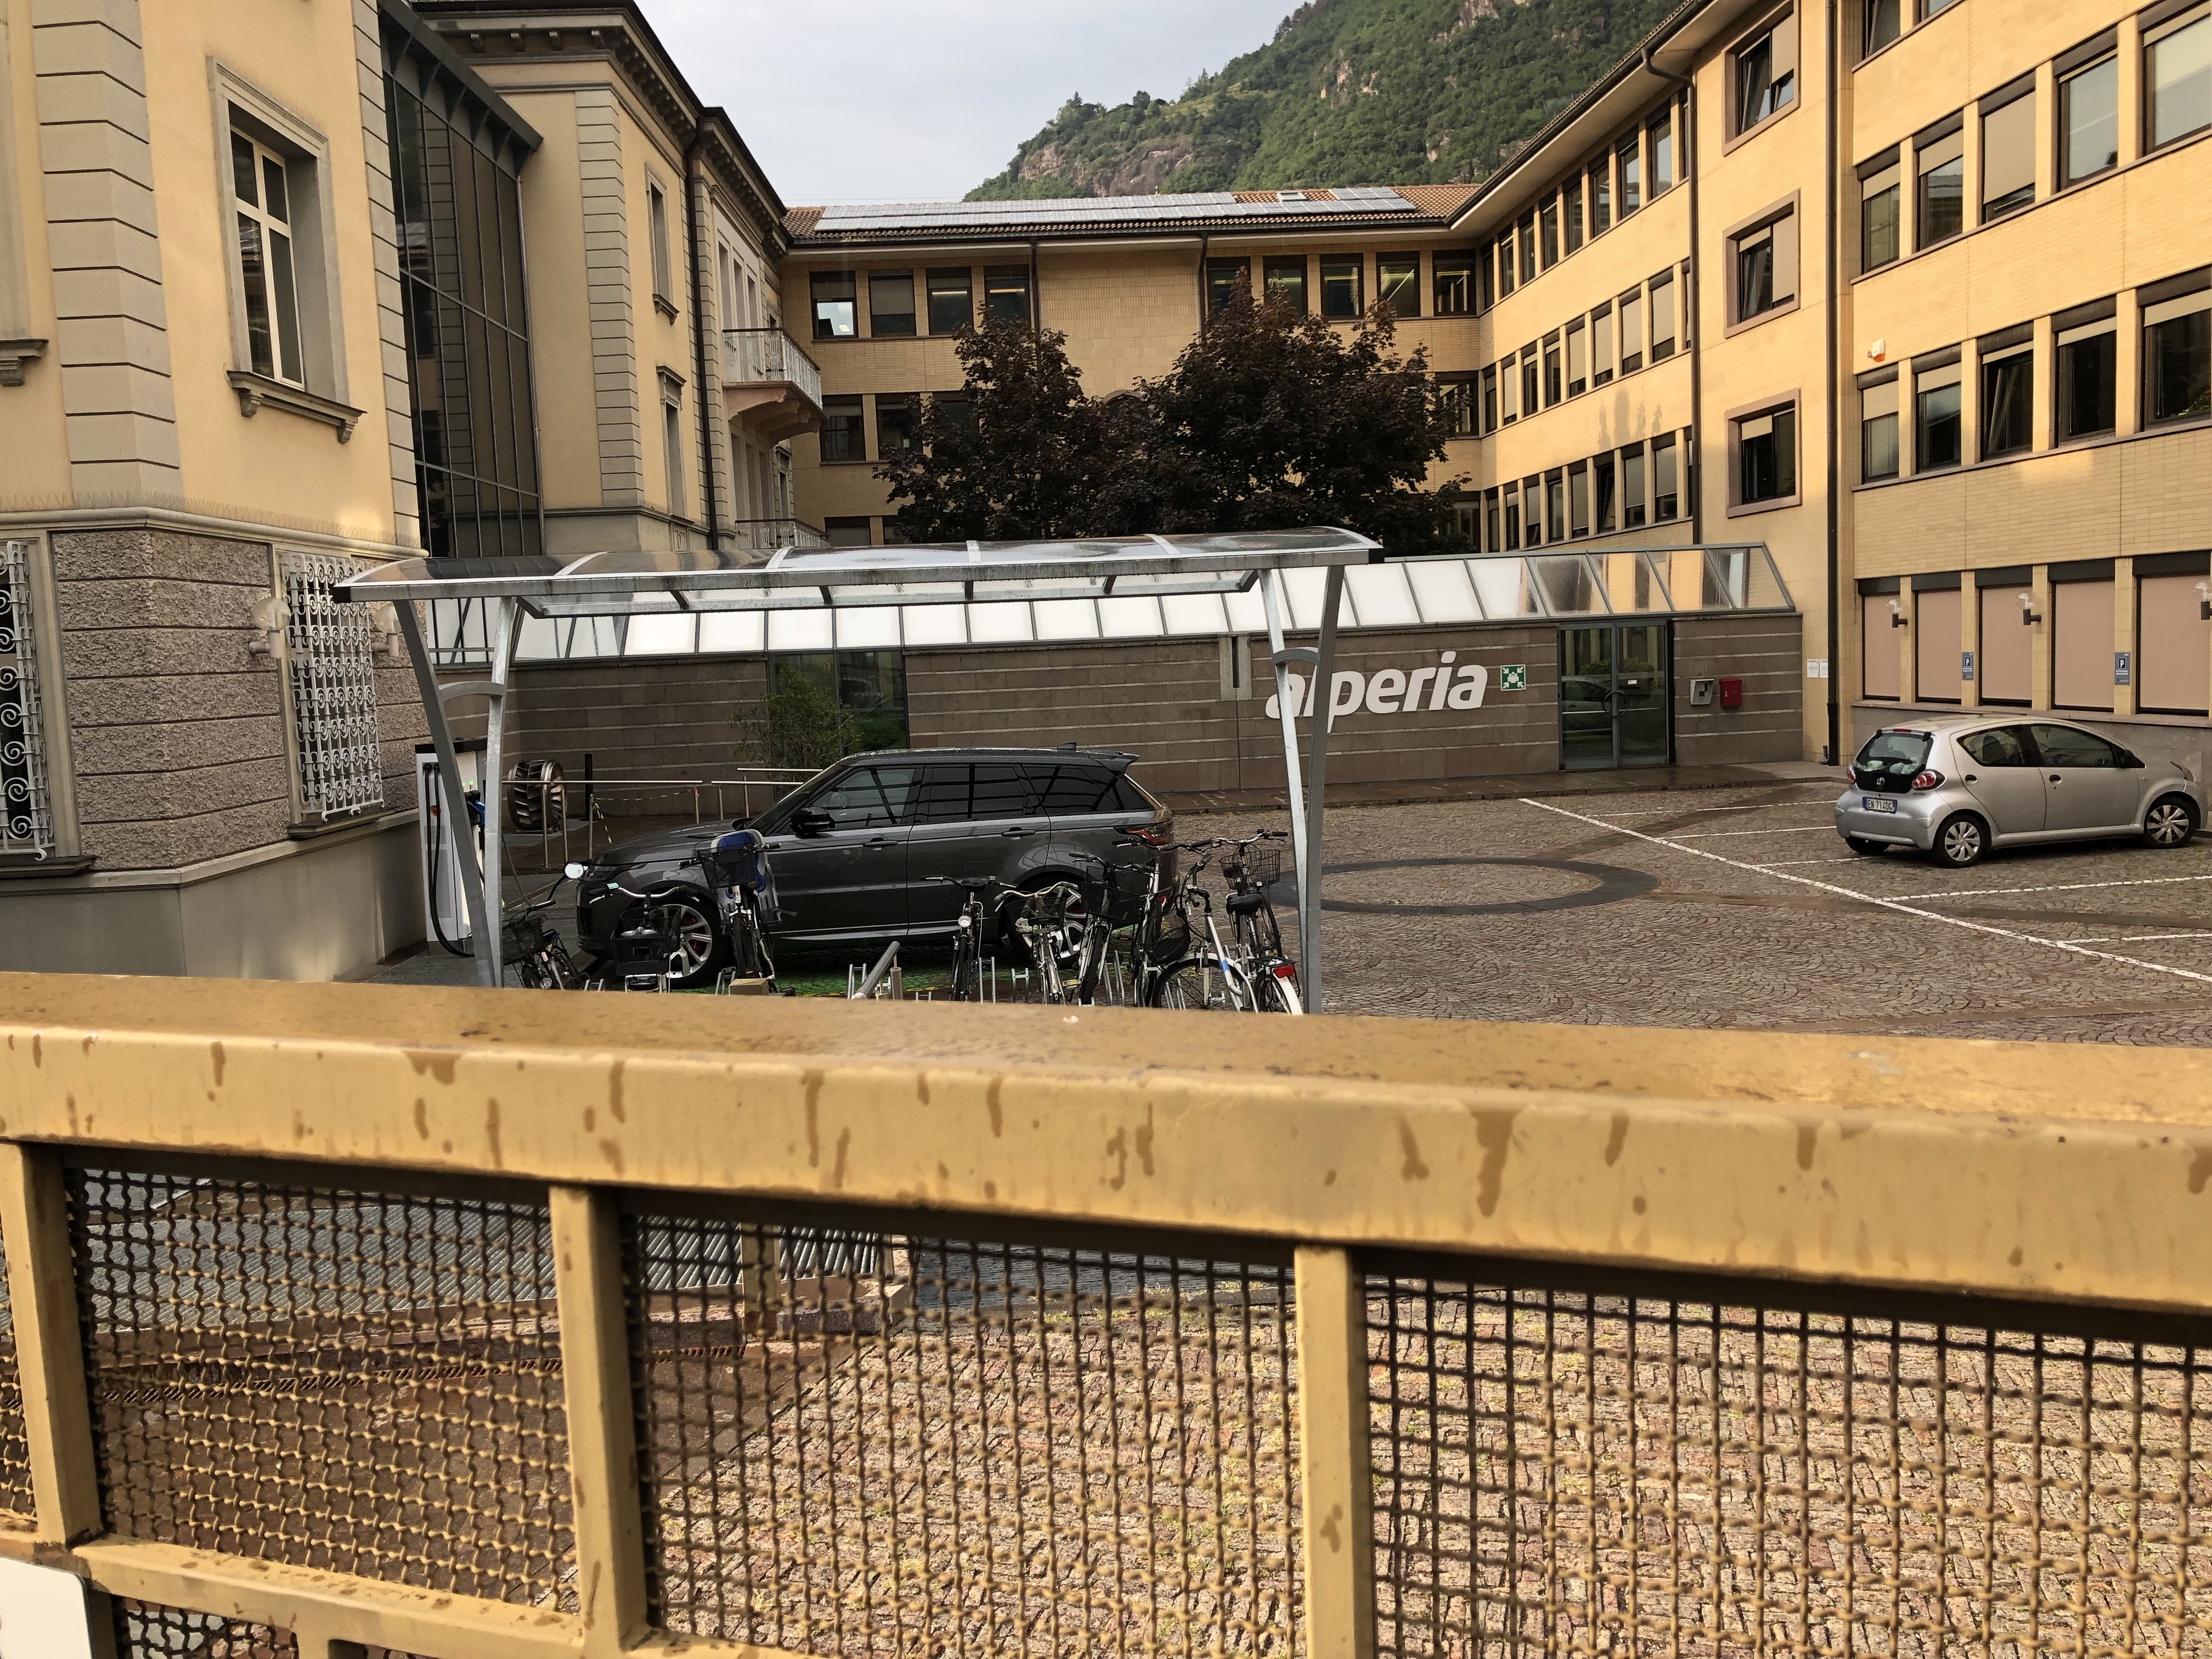 Ahi Ahi Ahi, Alperia. La Range Rover in ricarica viene chiusa dentro la sede a Bolzano!